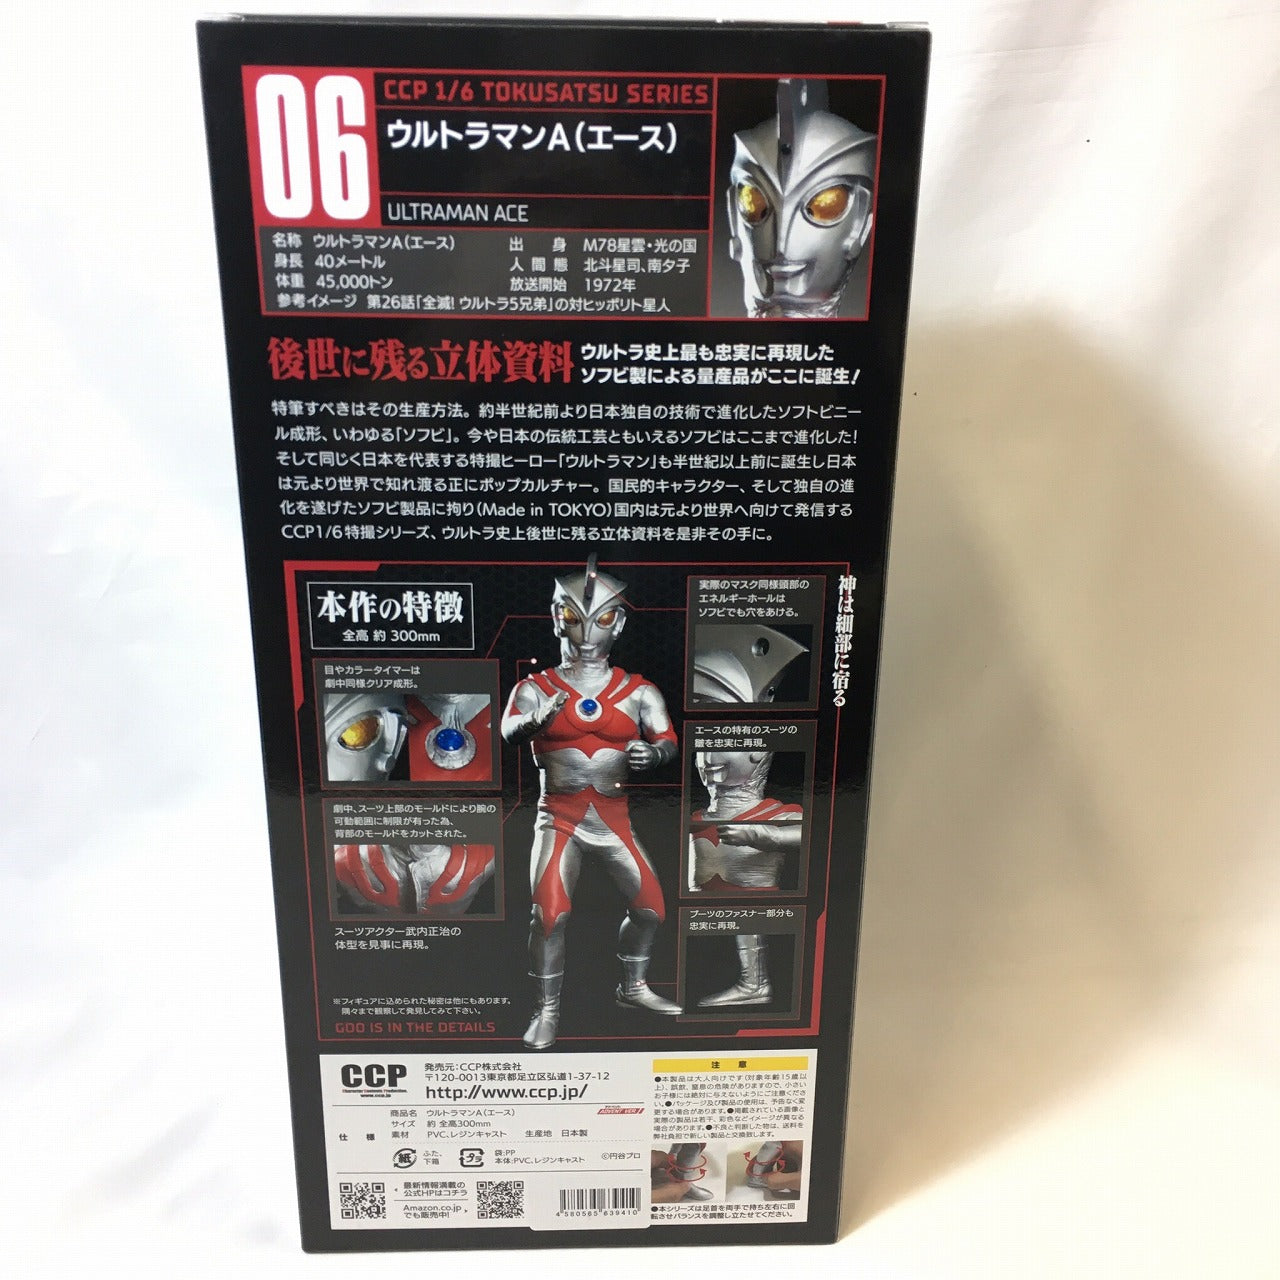 CCP 1/6 Tokusatsu Series Vol.06 Ultraman Ace Advent Ver. [Reprint], animota